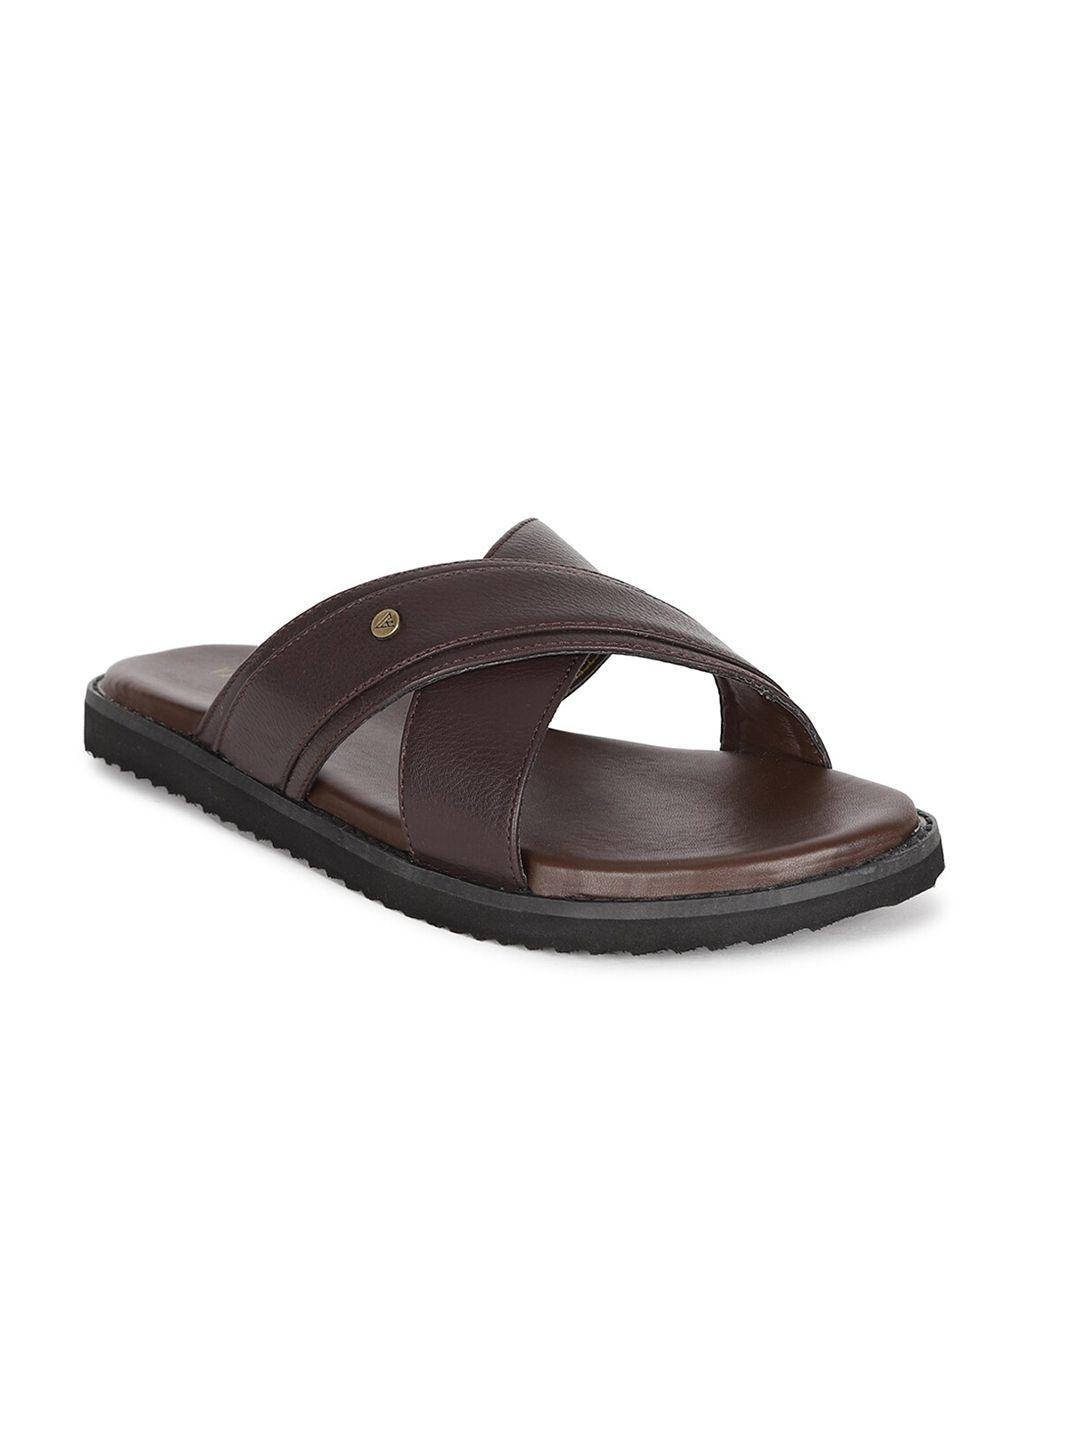 van-heusen-men-coffee-brown-leather-comfort-sandals